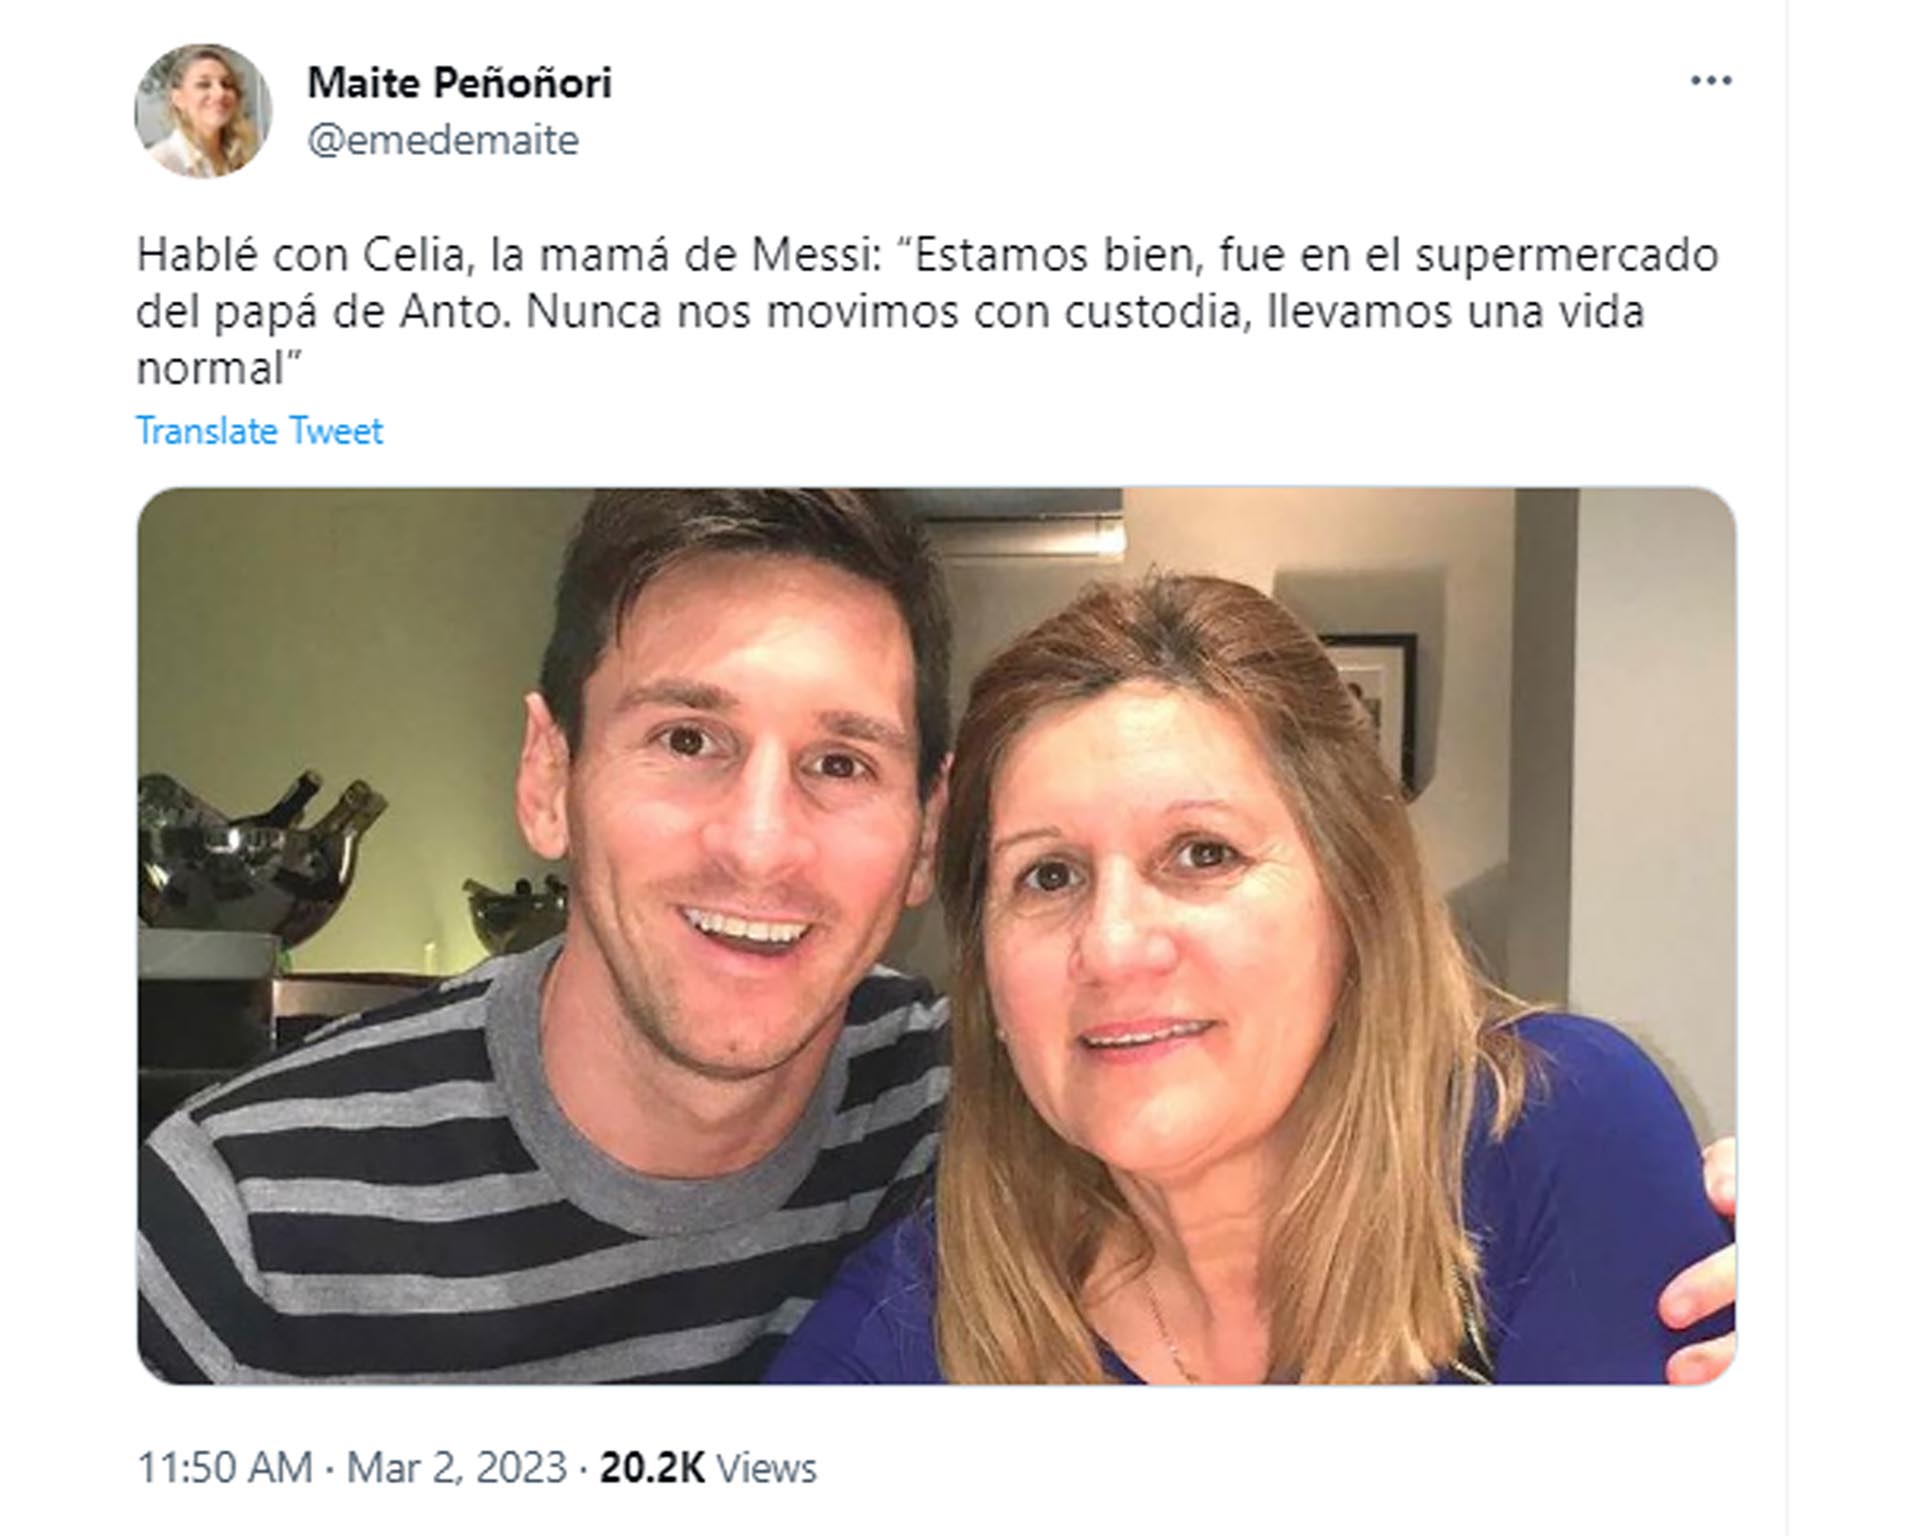 El posteo de la periodista sobre la charla con la madre de Messi